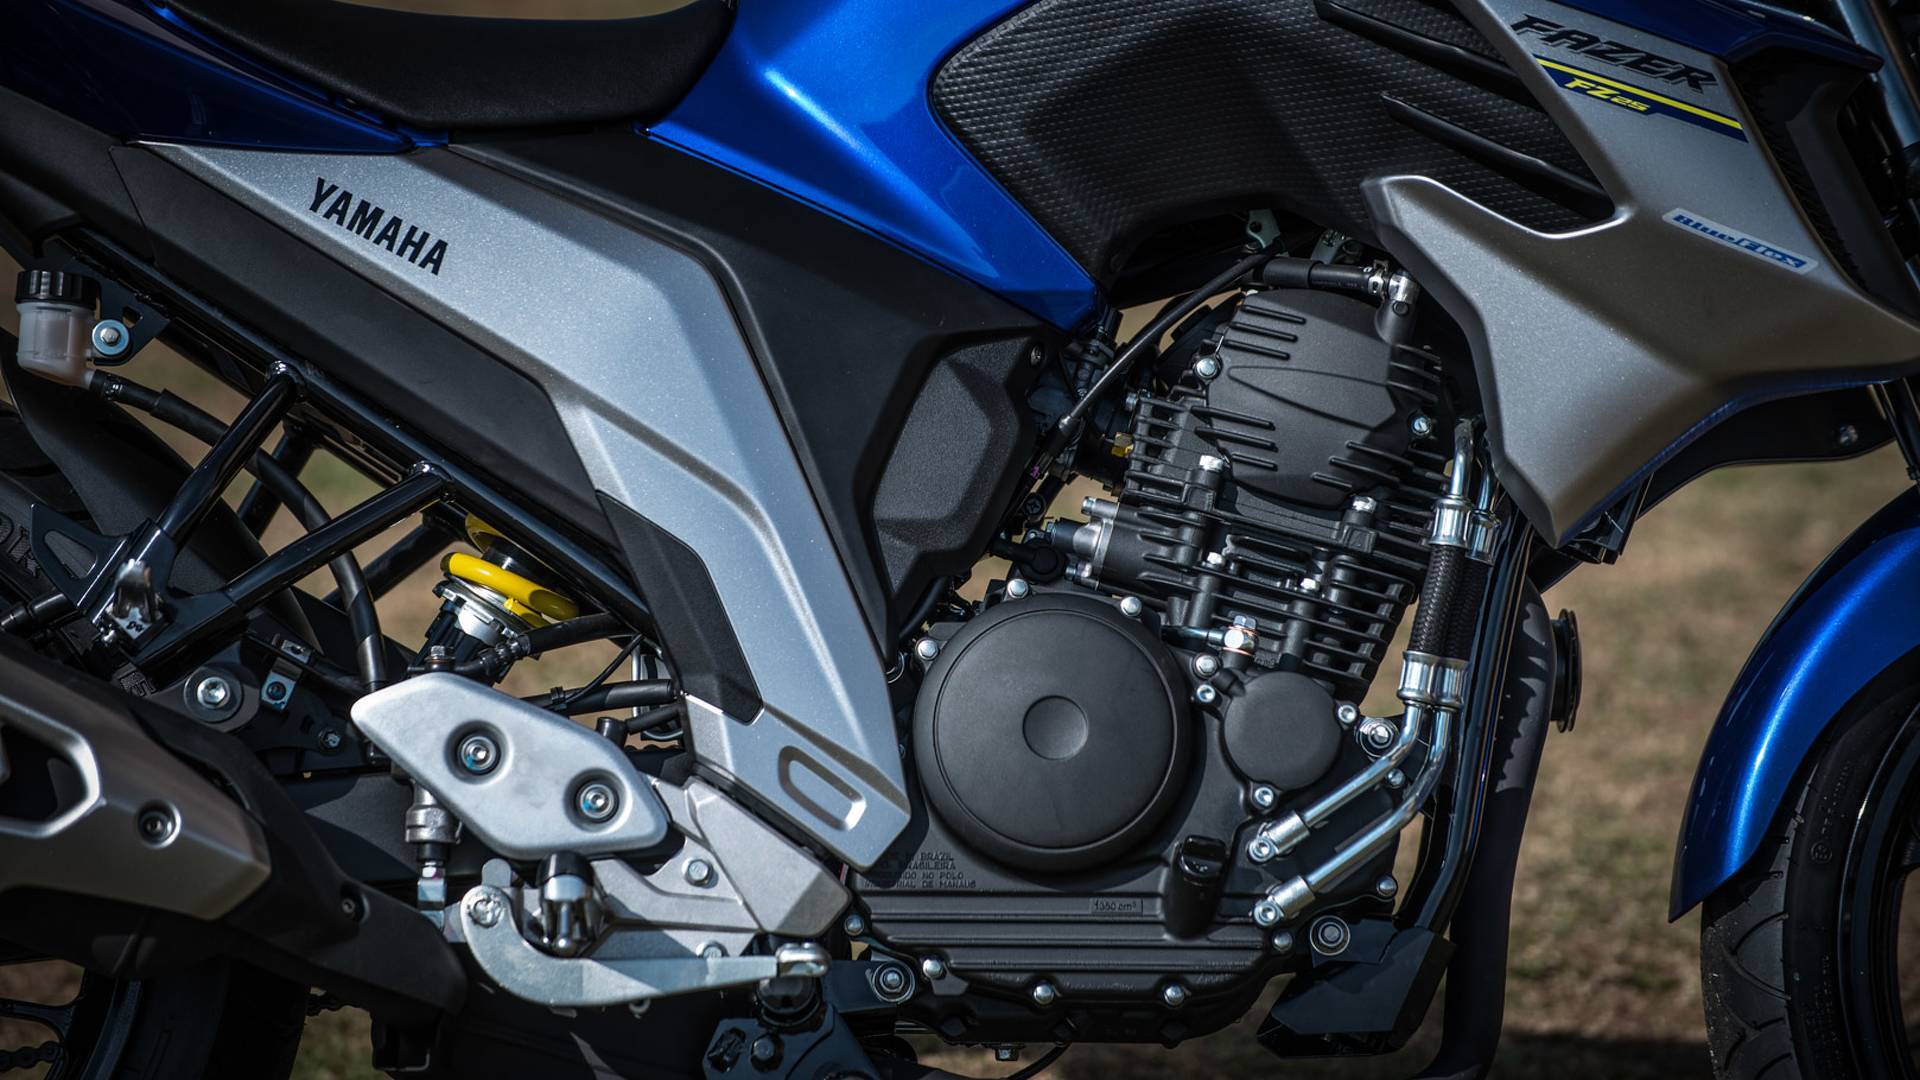 Yamaha Fazer 250 ABS. Foto: Divulgação